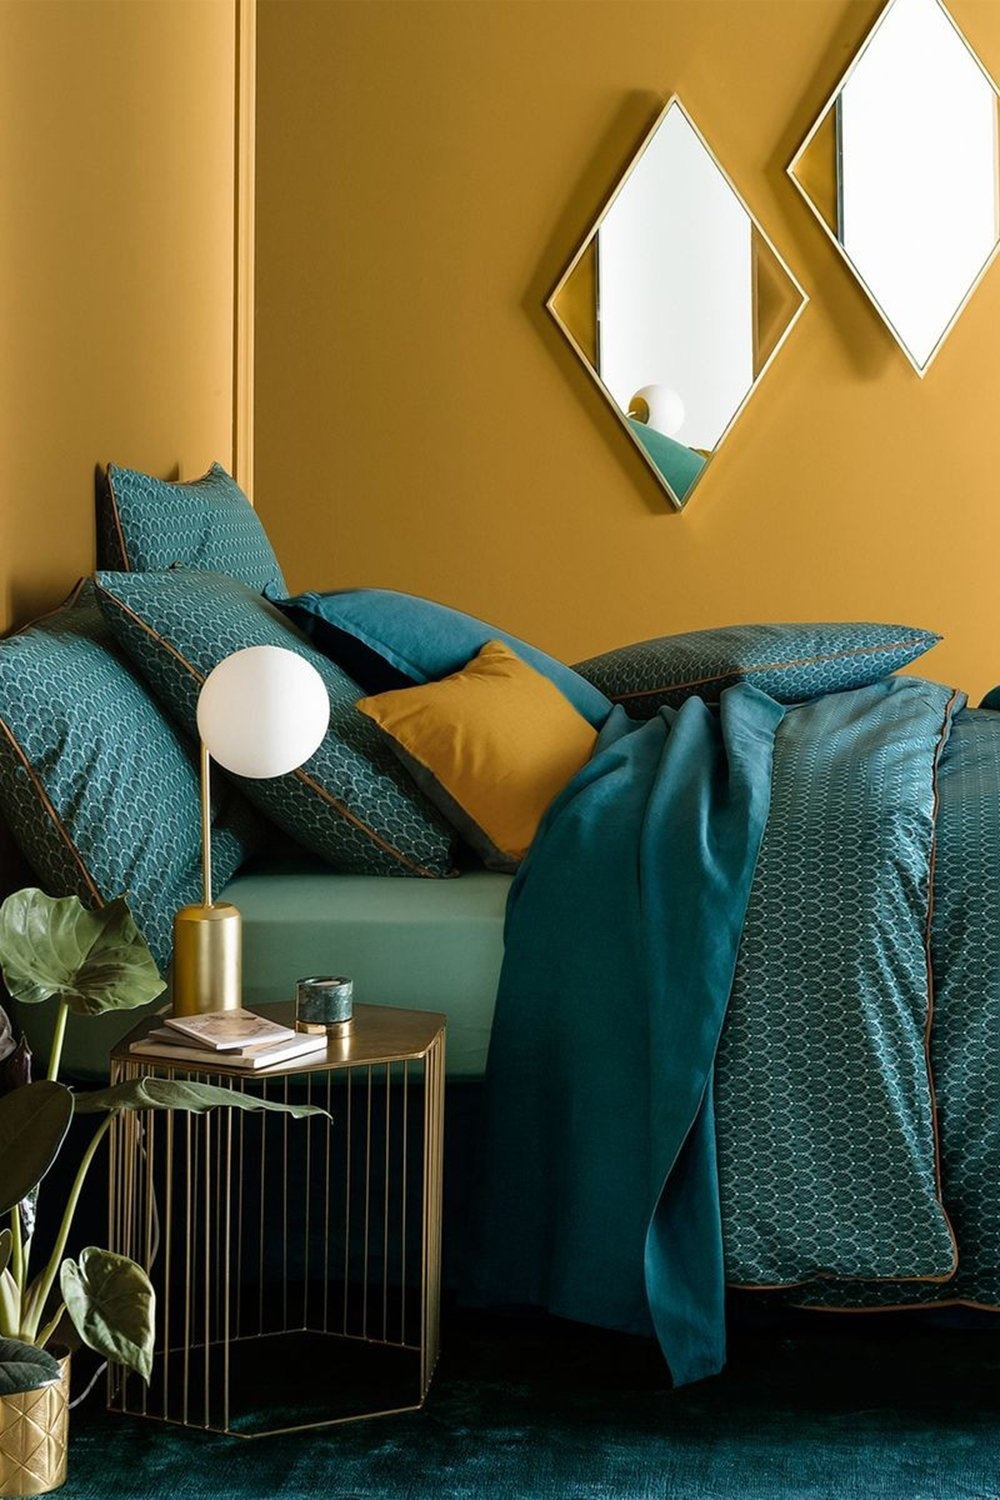 NTK nội thất đã biến phòng ngủ nhỏ trở nên quyến rũ nhờ phối hợp nền tường màu vàng mù tạt với sắc xanh cổ vịt của bộ chăn ga gối. Một chiếc đèn bàn thân kim loại mạ vàng đồng là điểm nhấn tuyệt vời với táp đầu giường và gương cùng phong cách.